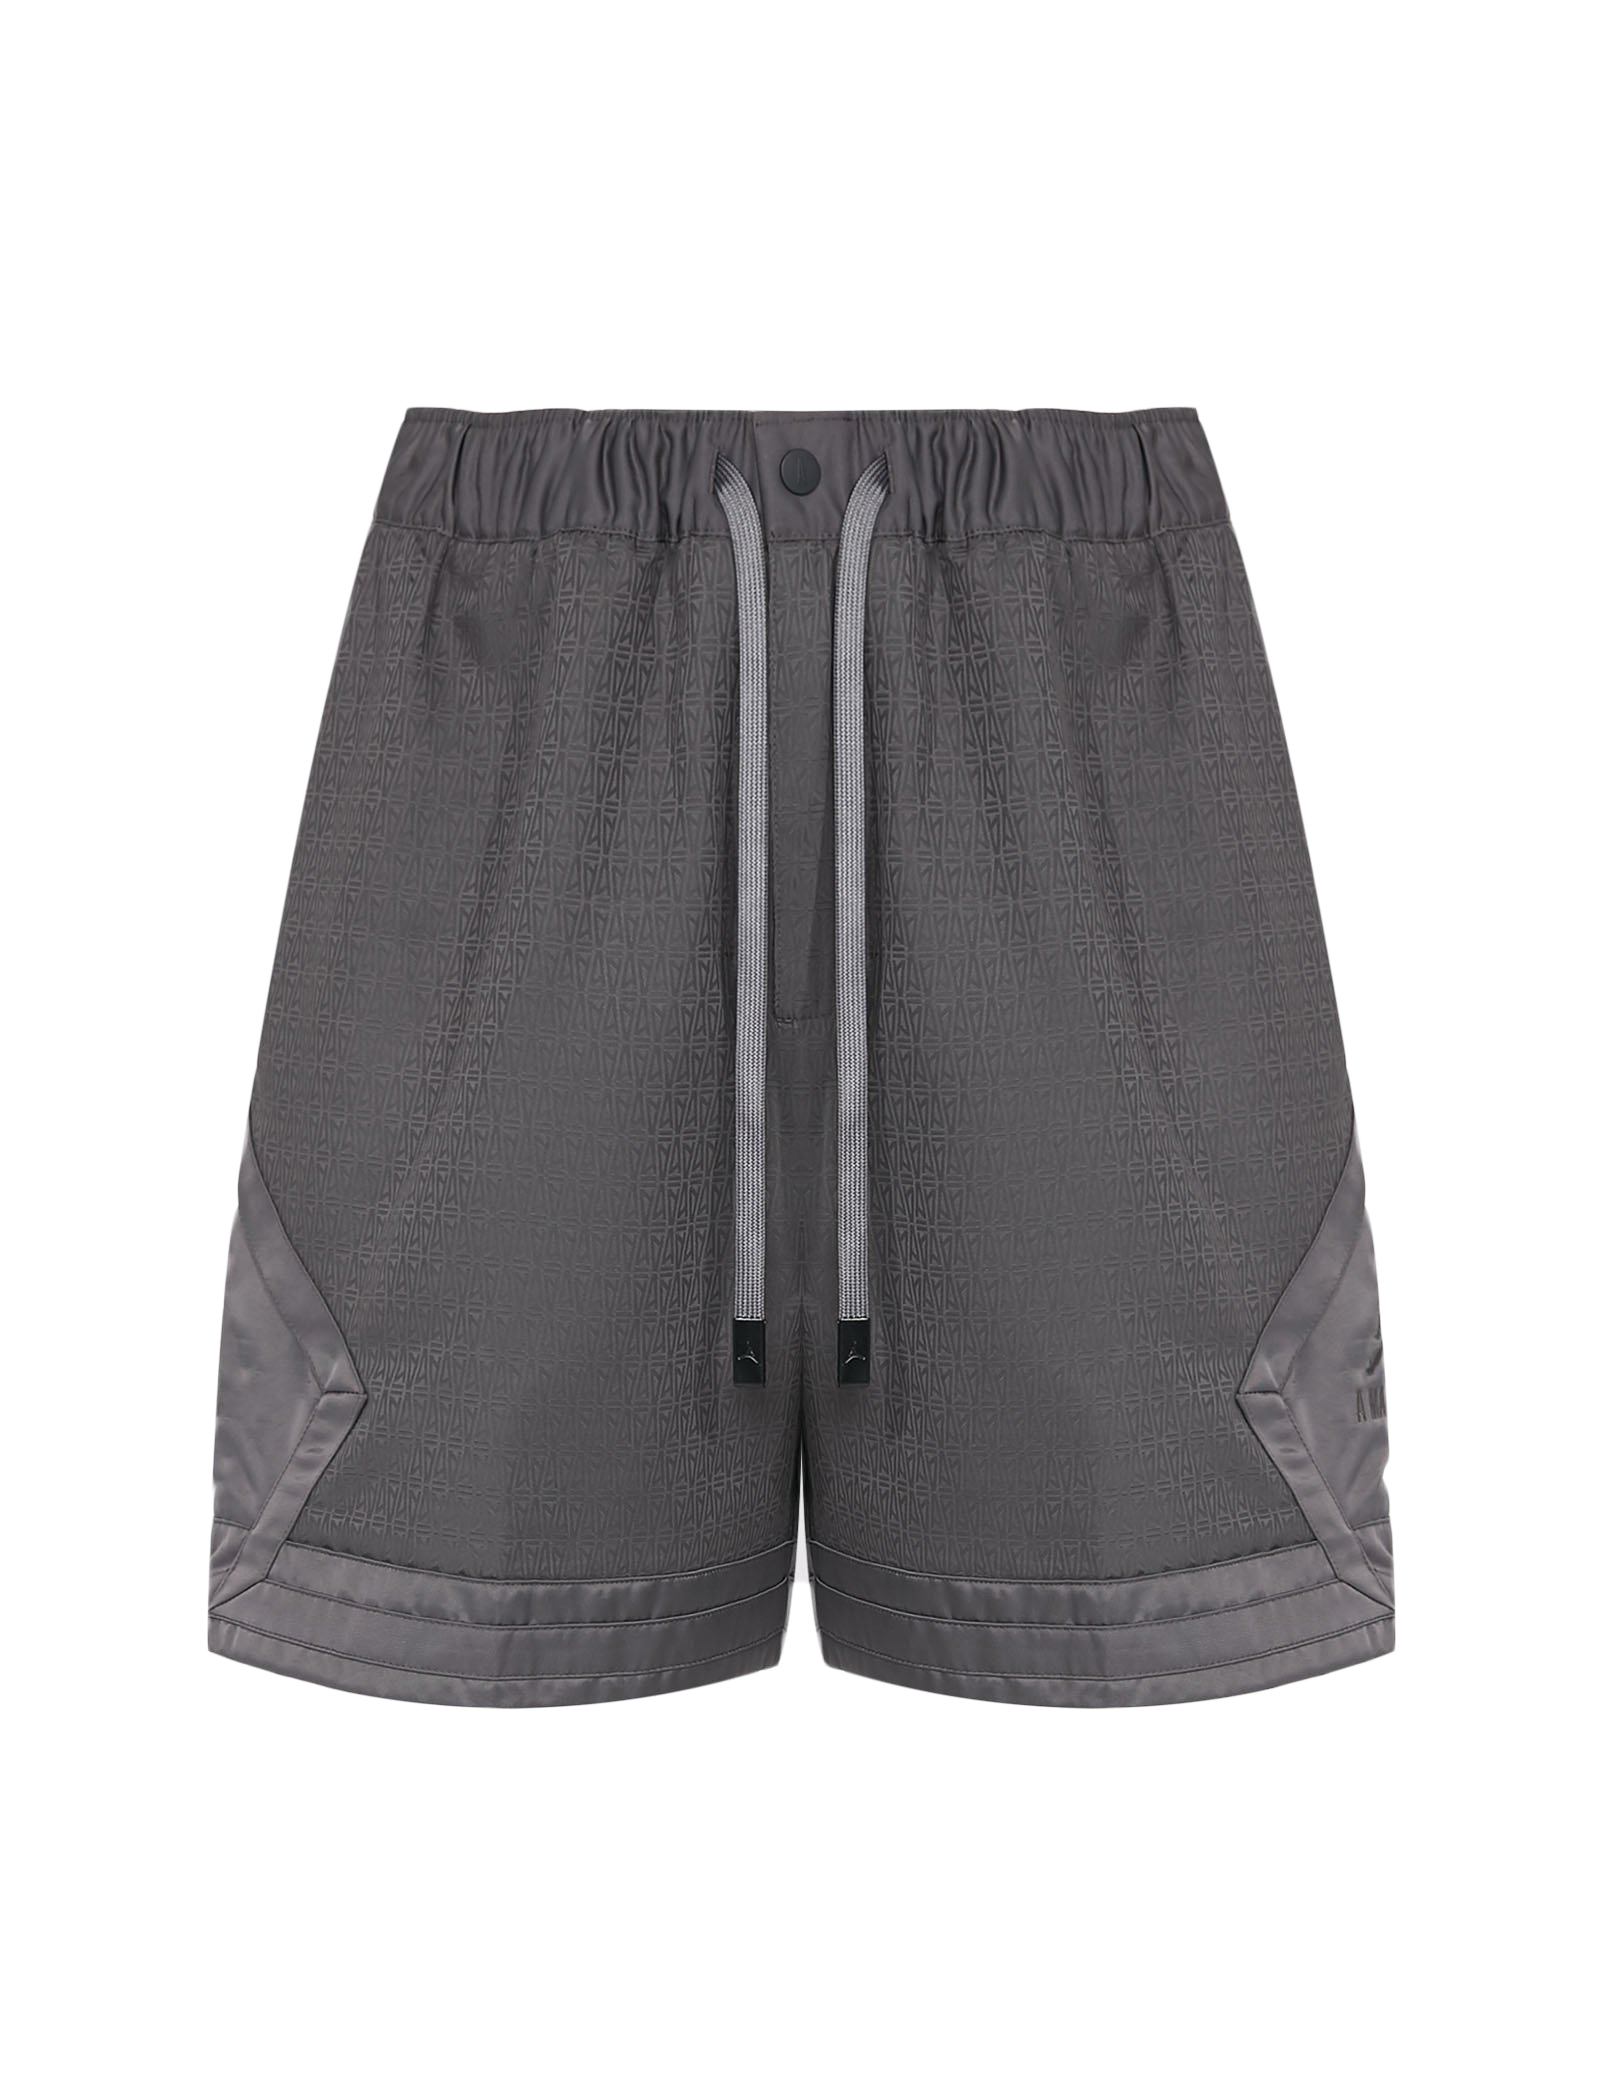 dark grey jordan shorts